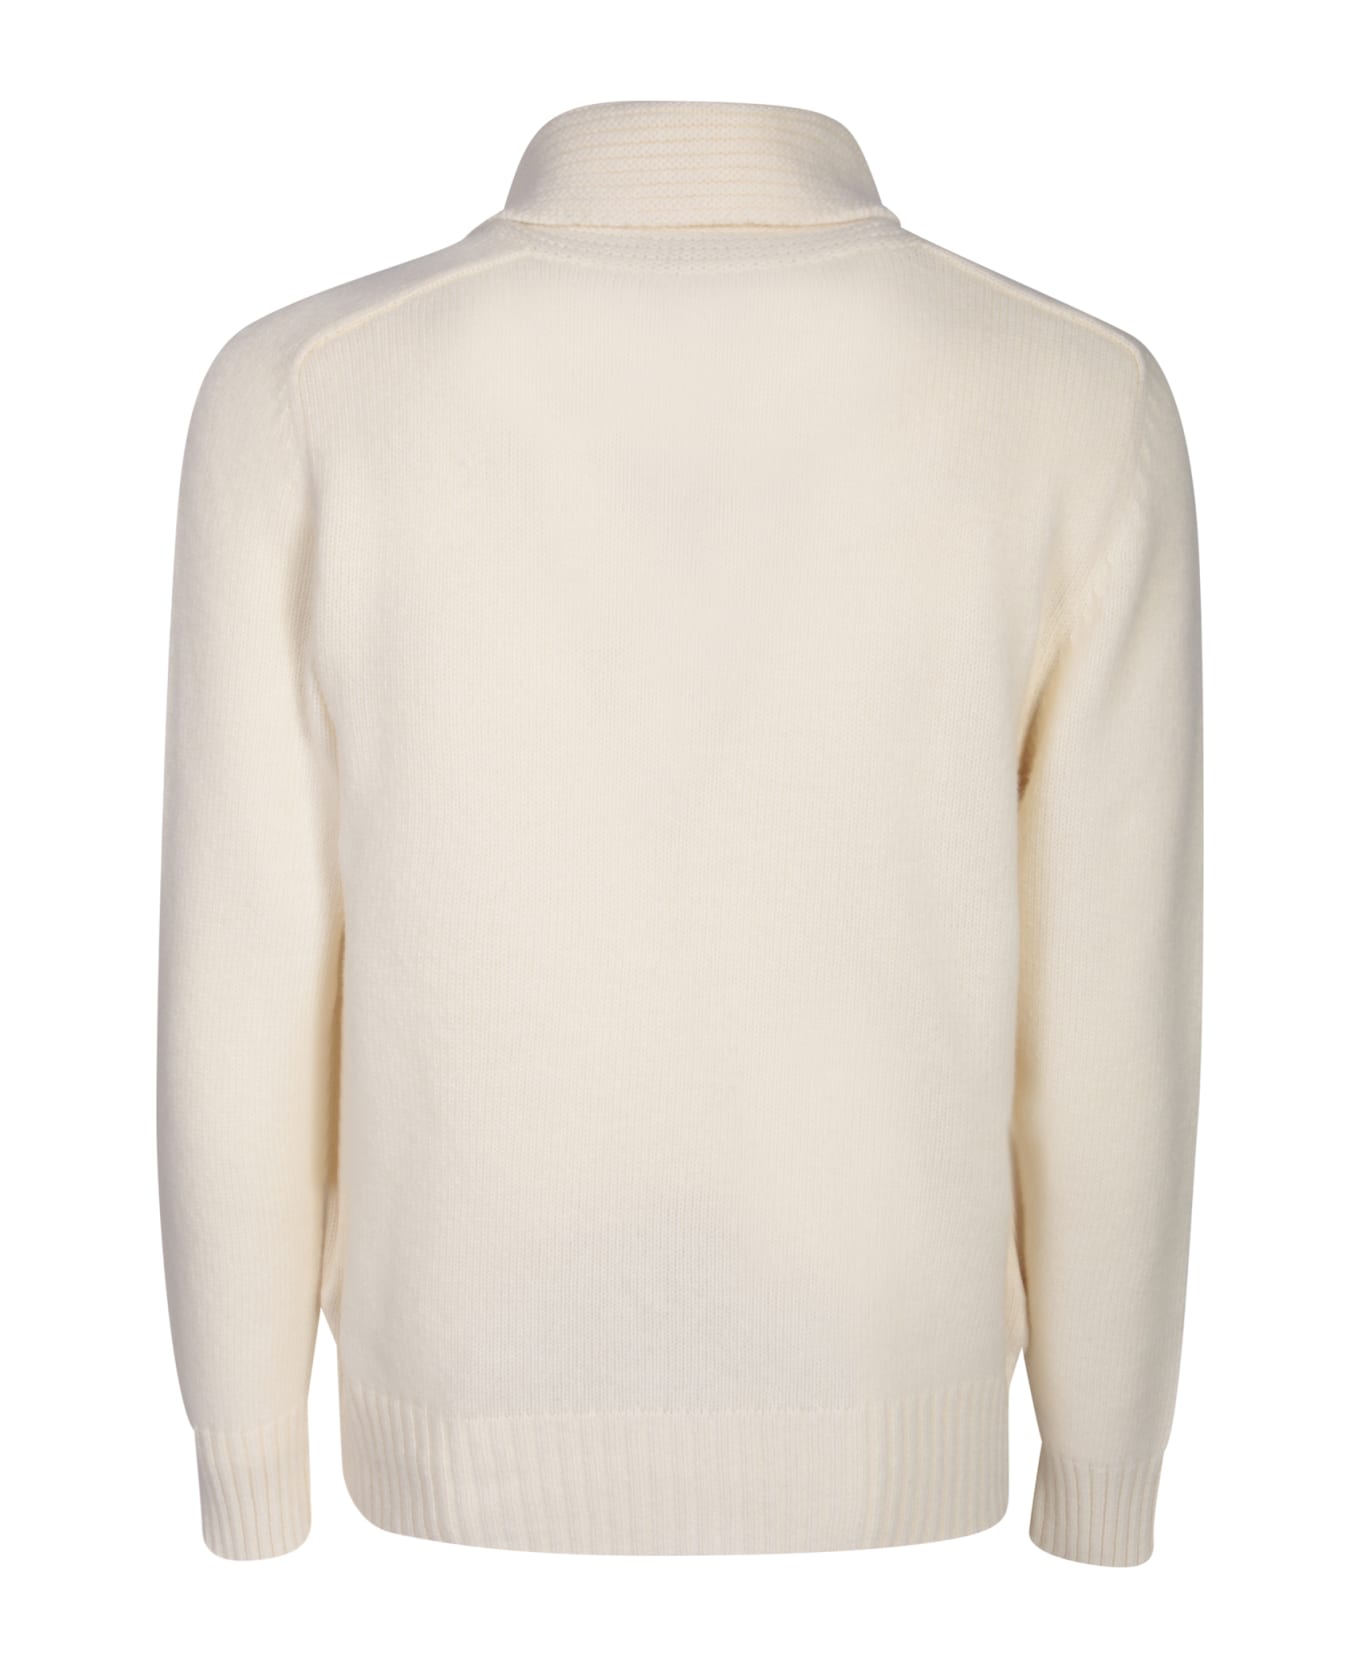 Tagliatore Zippered Cream Sweater - Grey